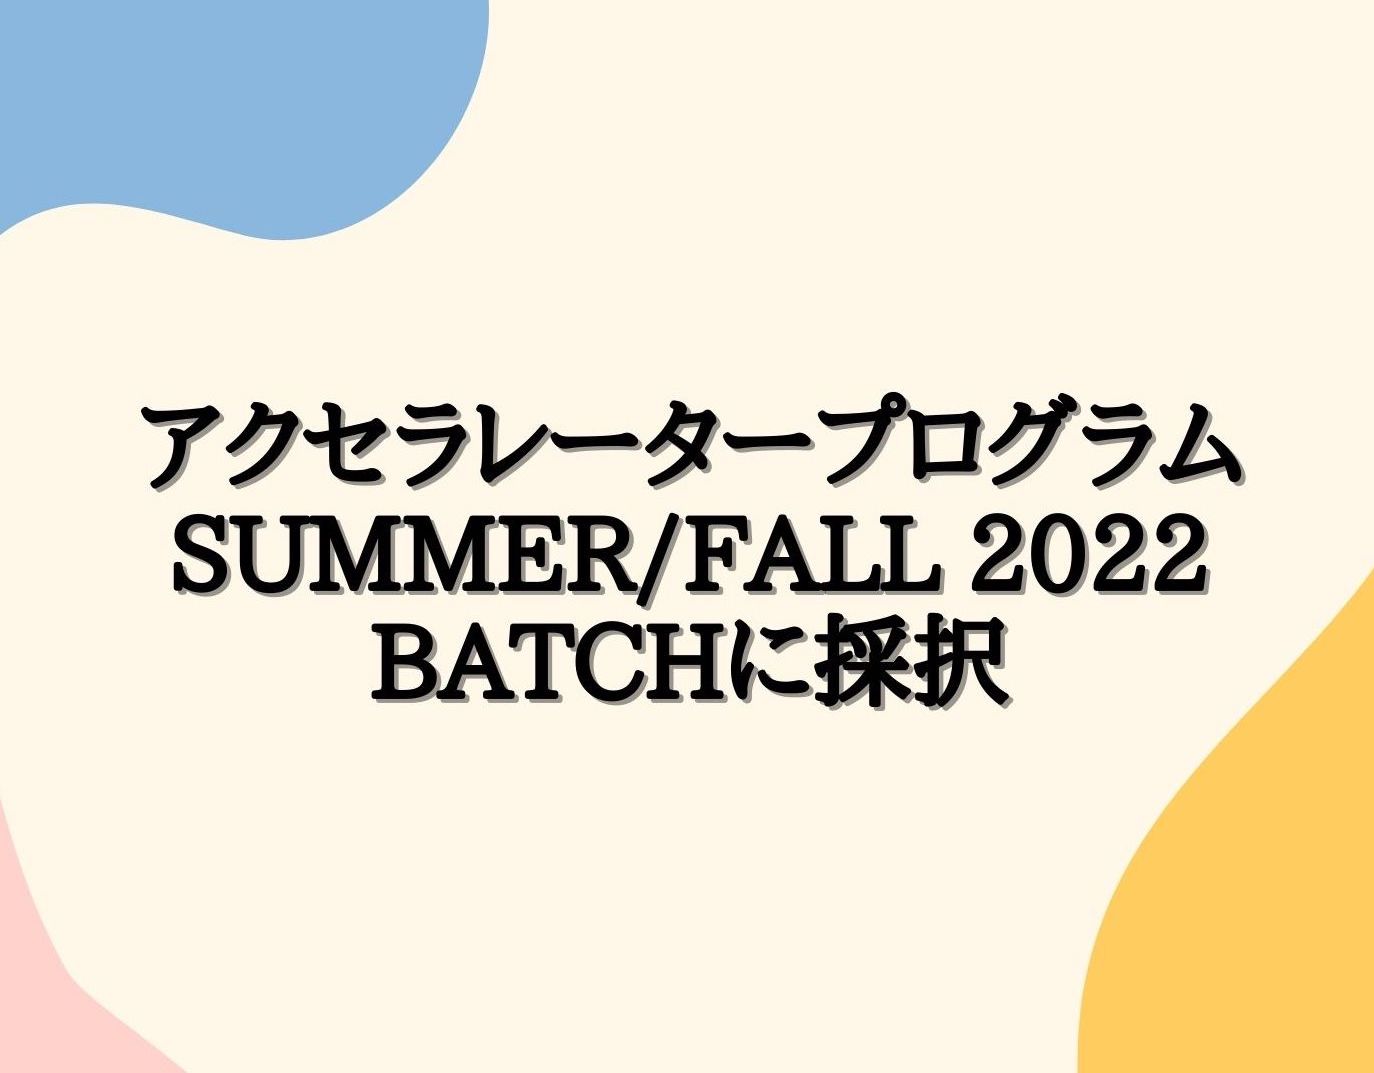 Plug and Play Japanのアクセラレータープログラム Summer/Fall 2022 Batchに採択されました